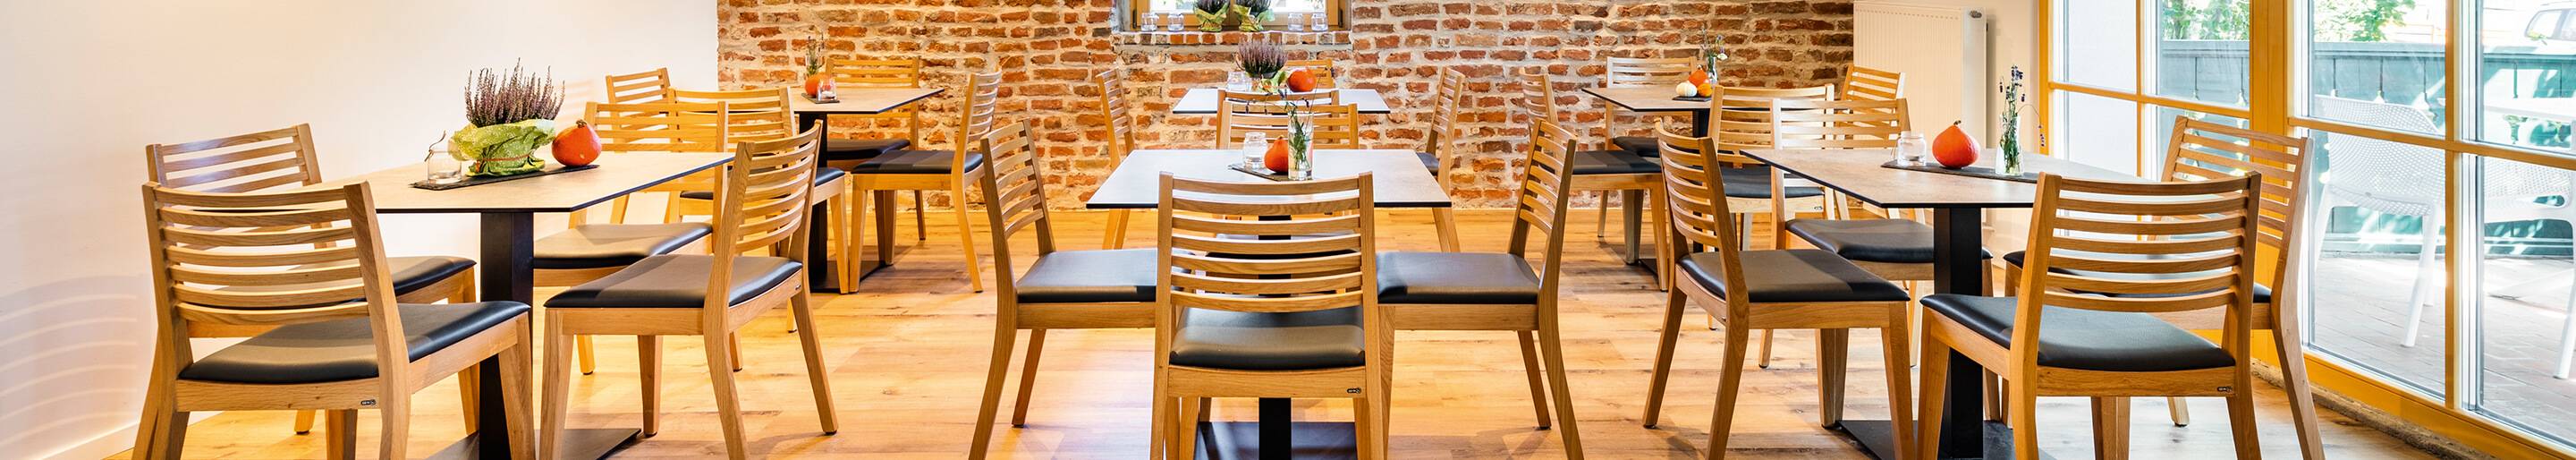 Chaises empilables pour votre restaurant ou hôtel